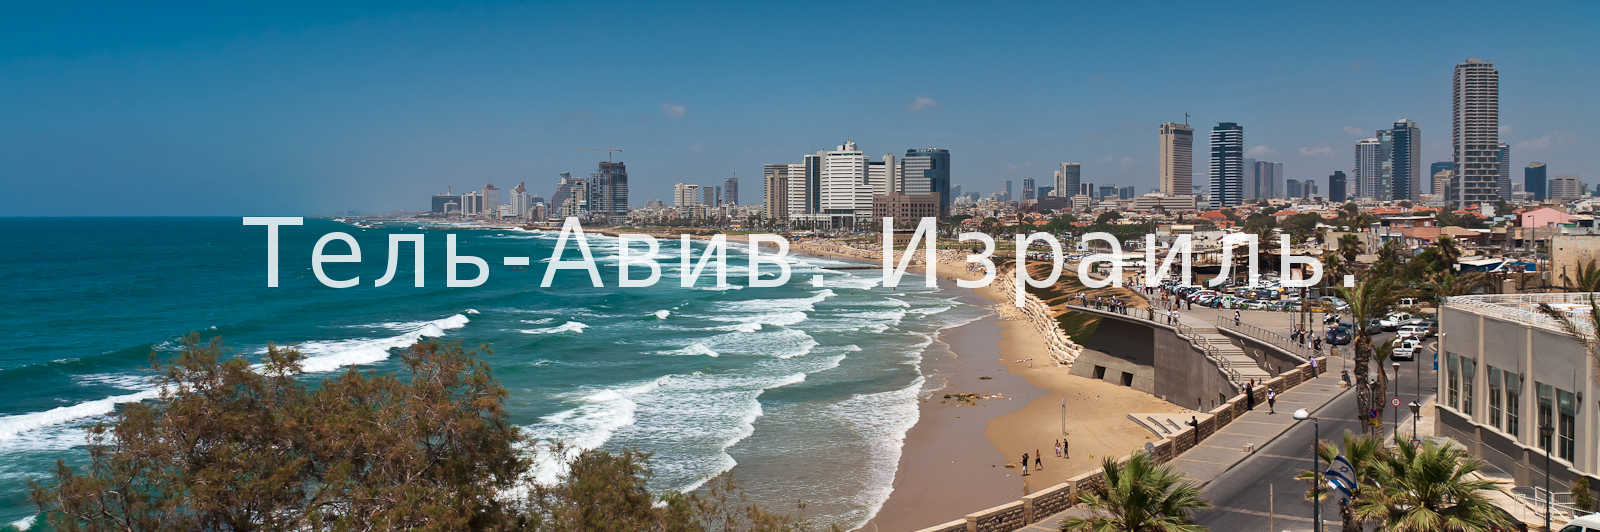 Тель-Авив, Израиль, море, набережная